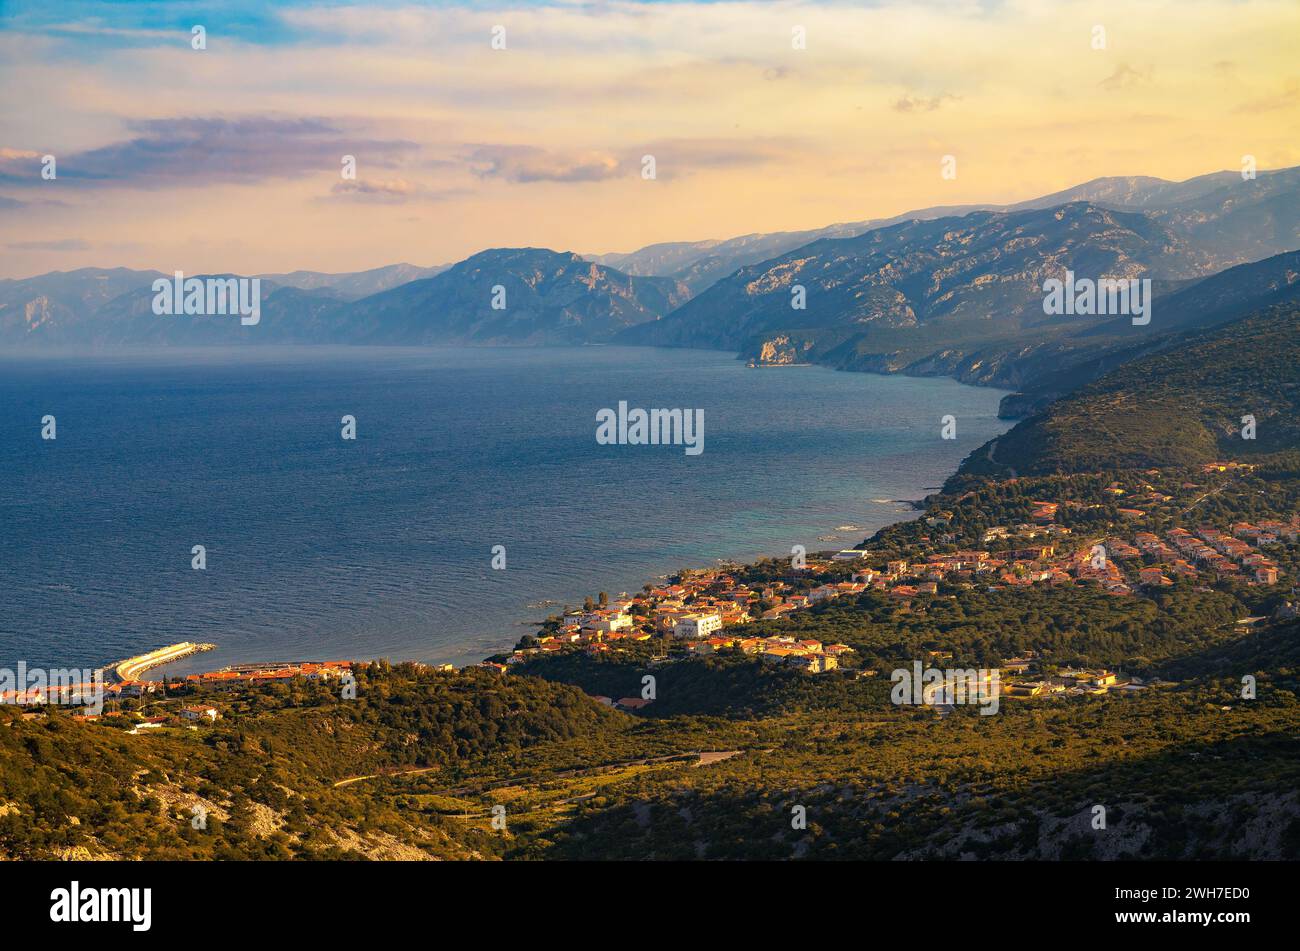 Coucher de soleil au-dessus du village côtier de Cala Gonone et de la mer Tyrrhénienne en Sardaigne Banque D'Images